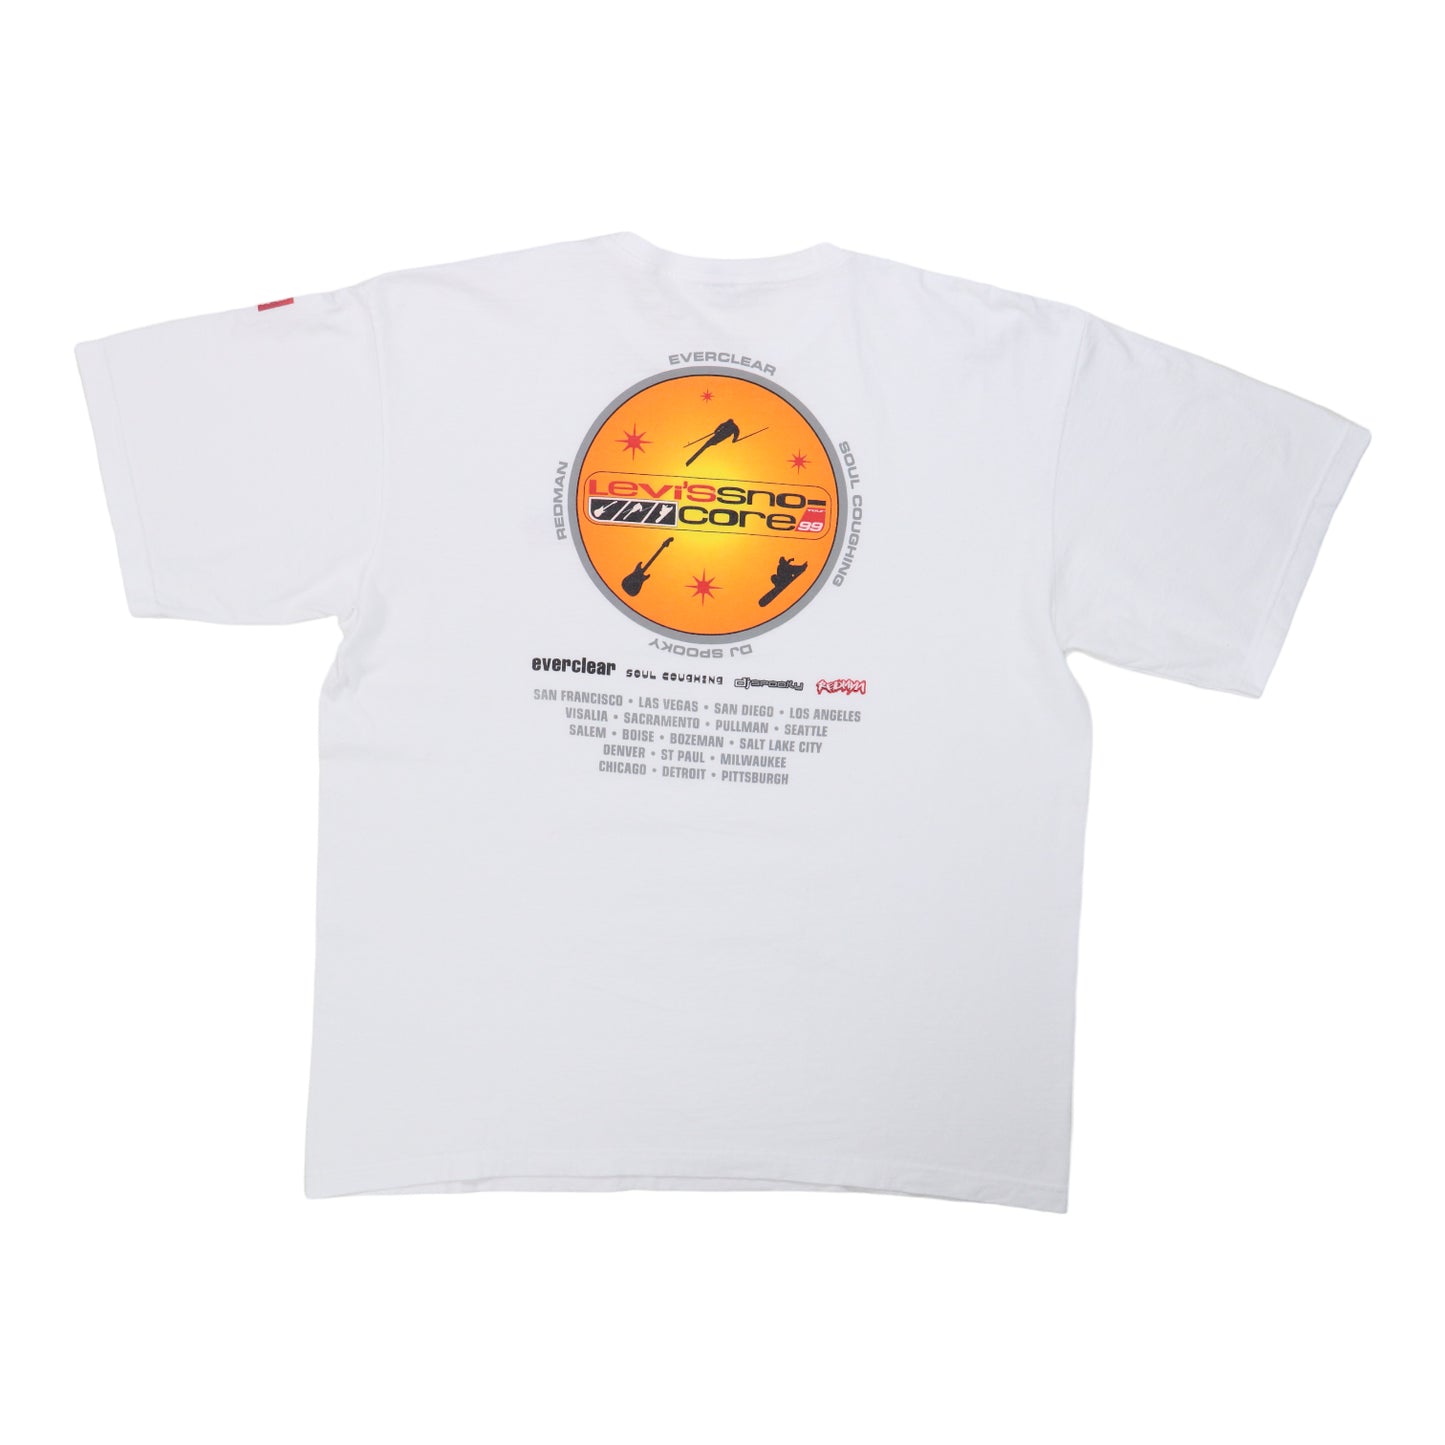 1999 Levi's Snocore Concert Crew Shirt